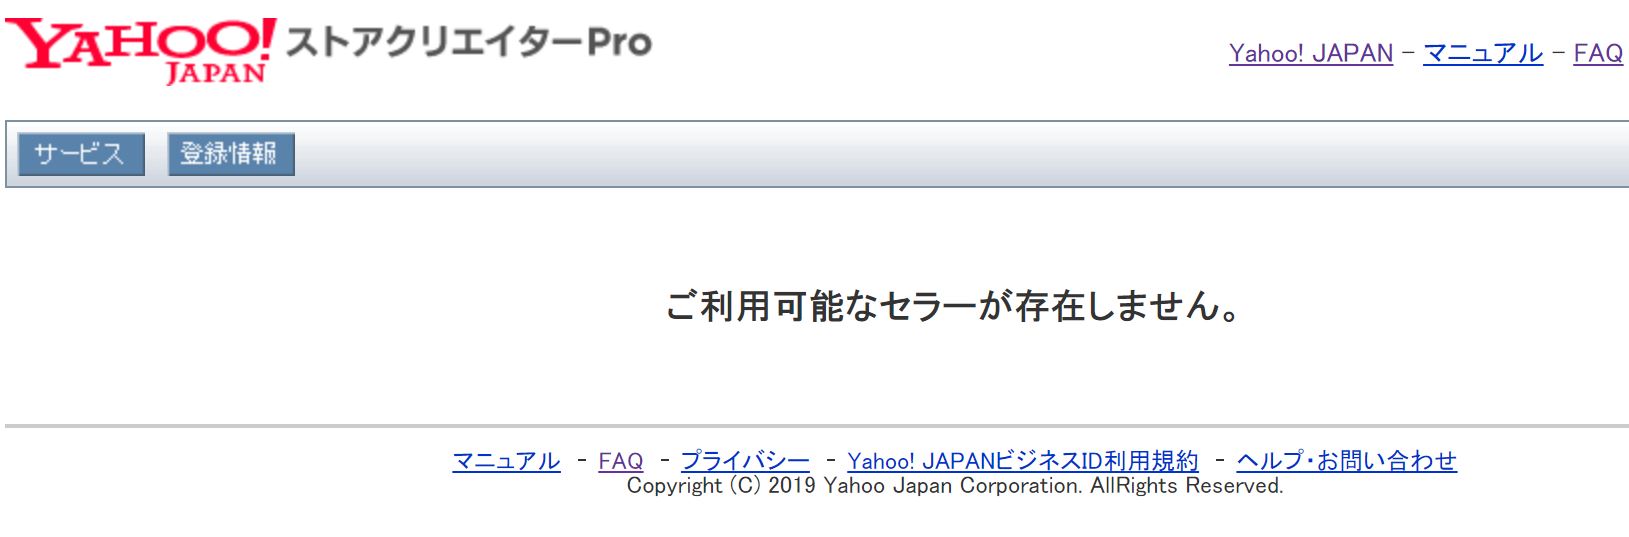 田中毅 Takeru Tanaka Legoliss Inc Yahoo のストアクリエイターpro は現在現座不具合が起こっているようですね ログインできない ご利用可能なセラーが存在しませんと表示される セール真っ最中にこれはキツイ